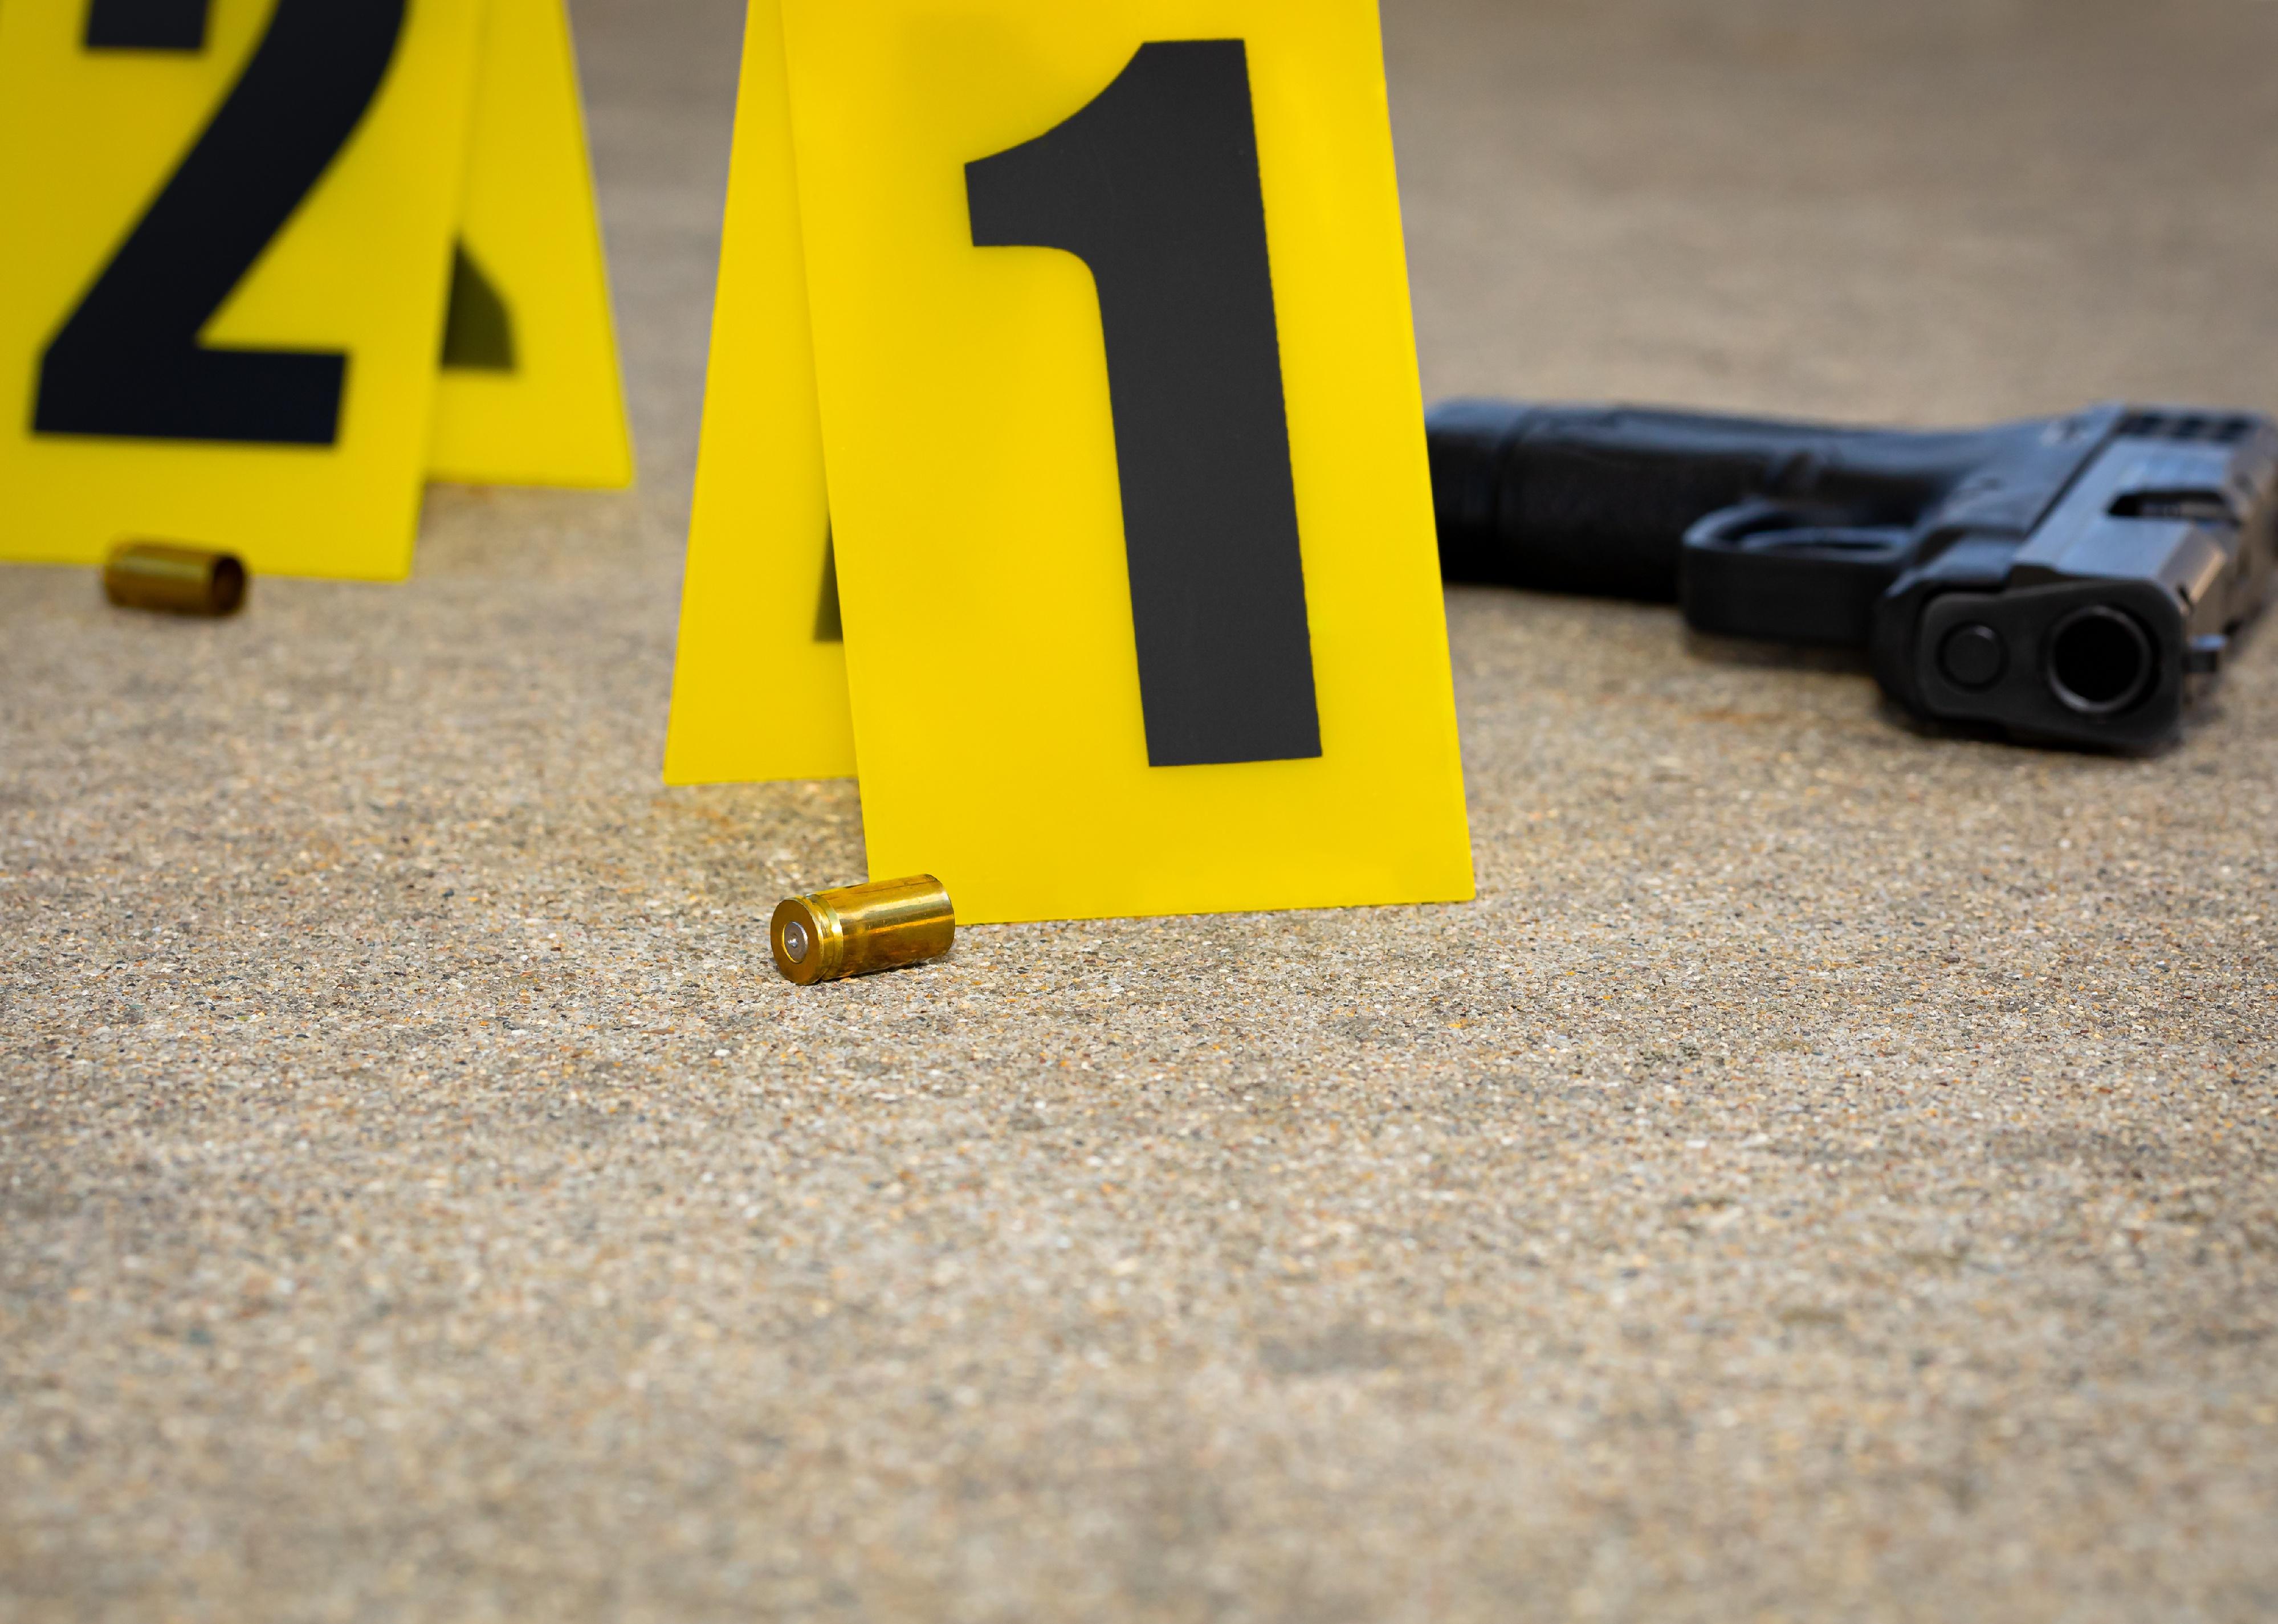 Gun shell casing at crime scene.